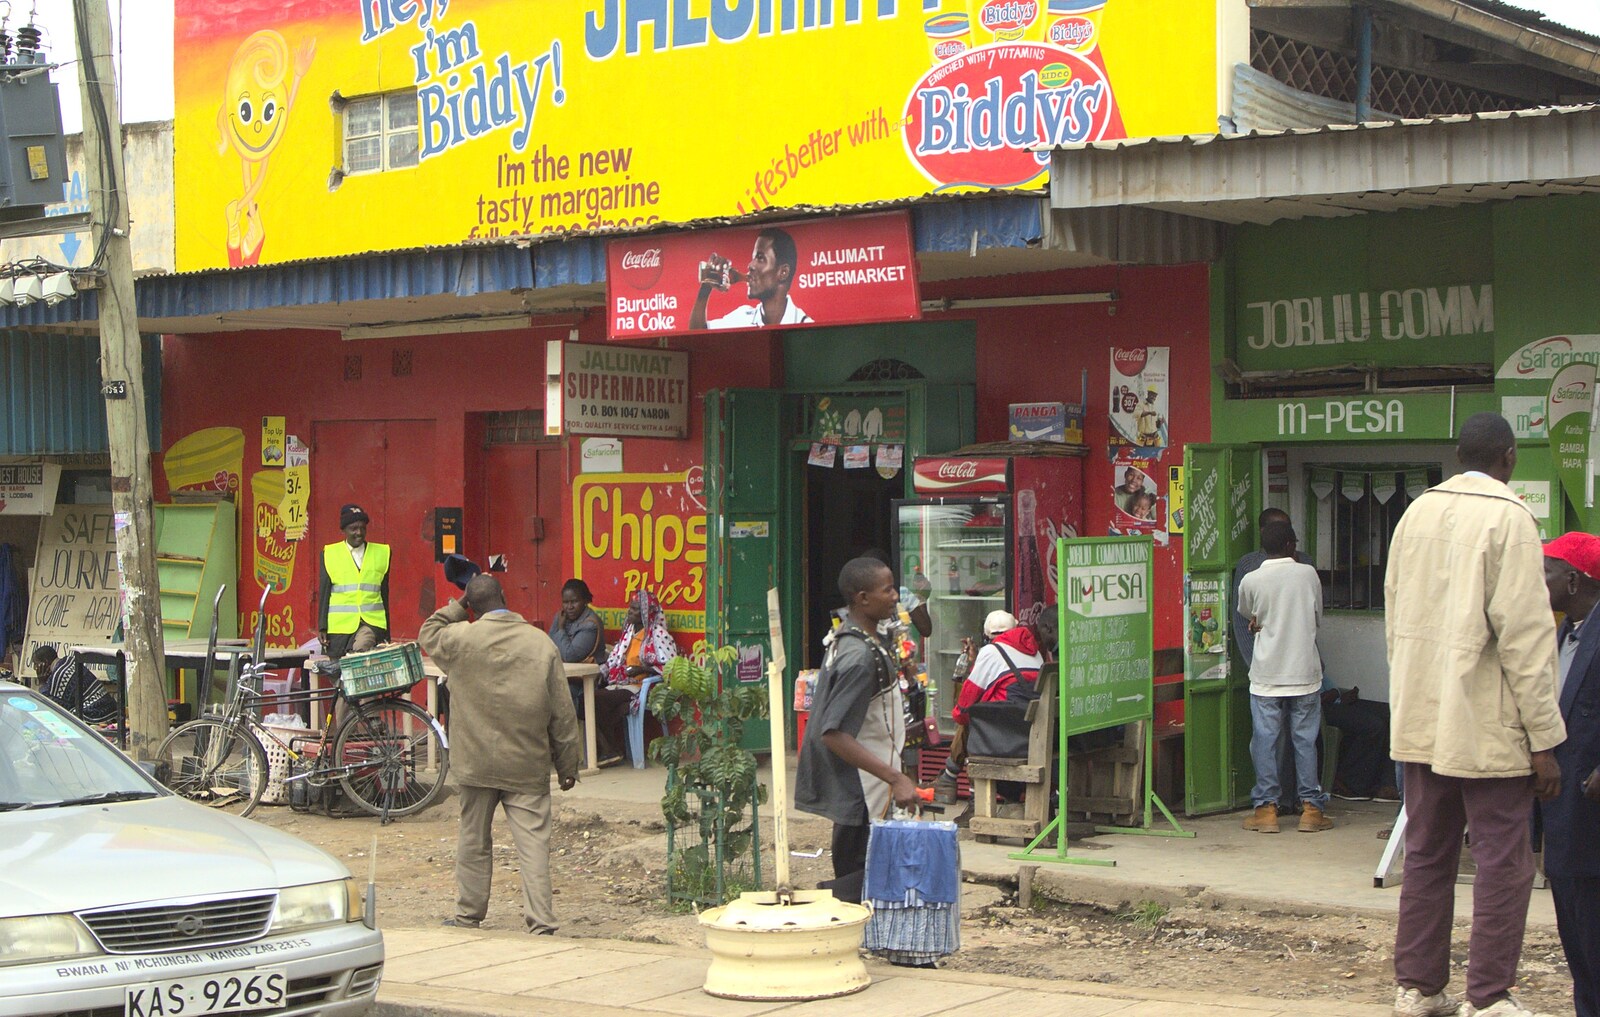 Adverts for Biddy's Margarine from Nairobi and the Road to Maasai Mara, Kenya, Africa - 1st November 2010